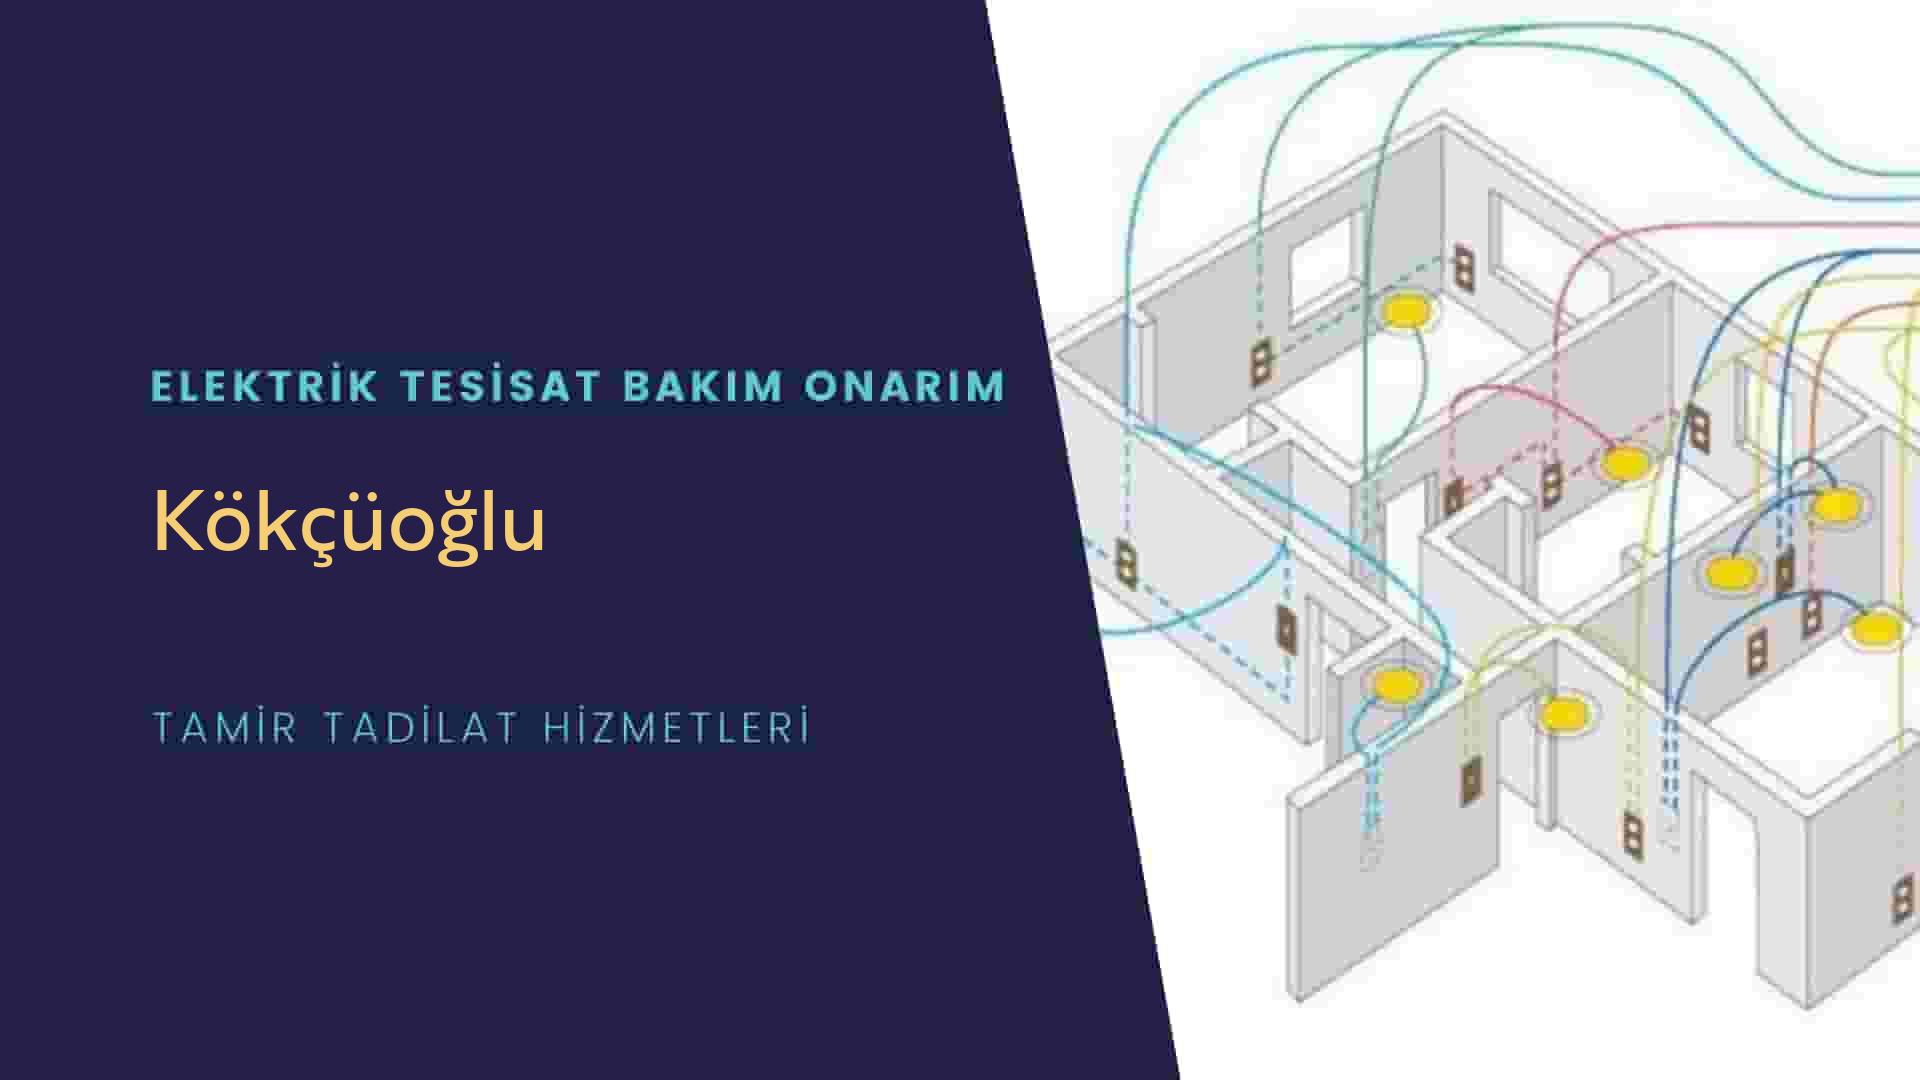 Kökçüoğlu'da elektrik tesisatı ustalarımı arıyorsunuz doğru adrestenizi Kökçüoğlu elektrik tesisatı ustalarımız 7/24 sizlere hizmet vermekten mutluluk duyar.